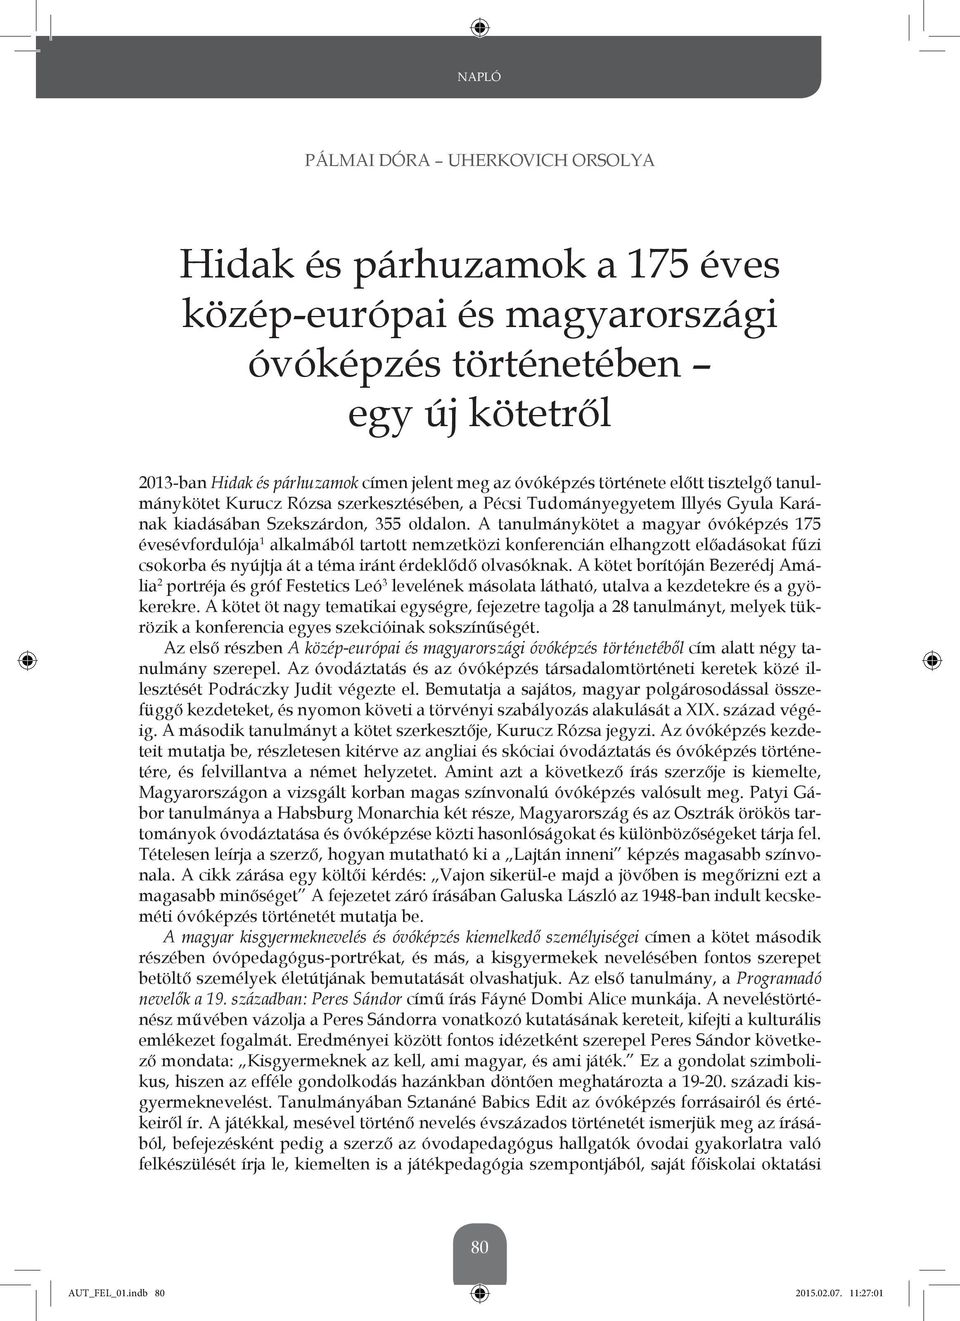 A tanulmánykötet a magyar óvóképzés 175 évesévfordulója 1 alkalmából tartott nemzetközi konferencián elhangzott előadásokat fűzi csokorba és nyújtja át a téma iránt érdeklődő olvasóknak.